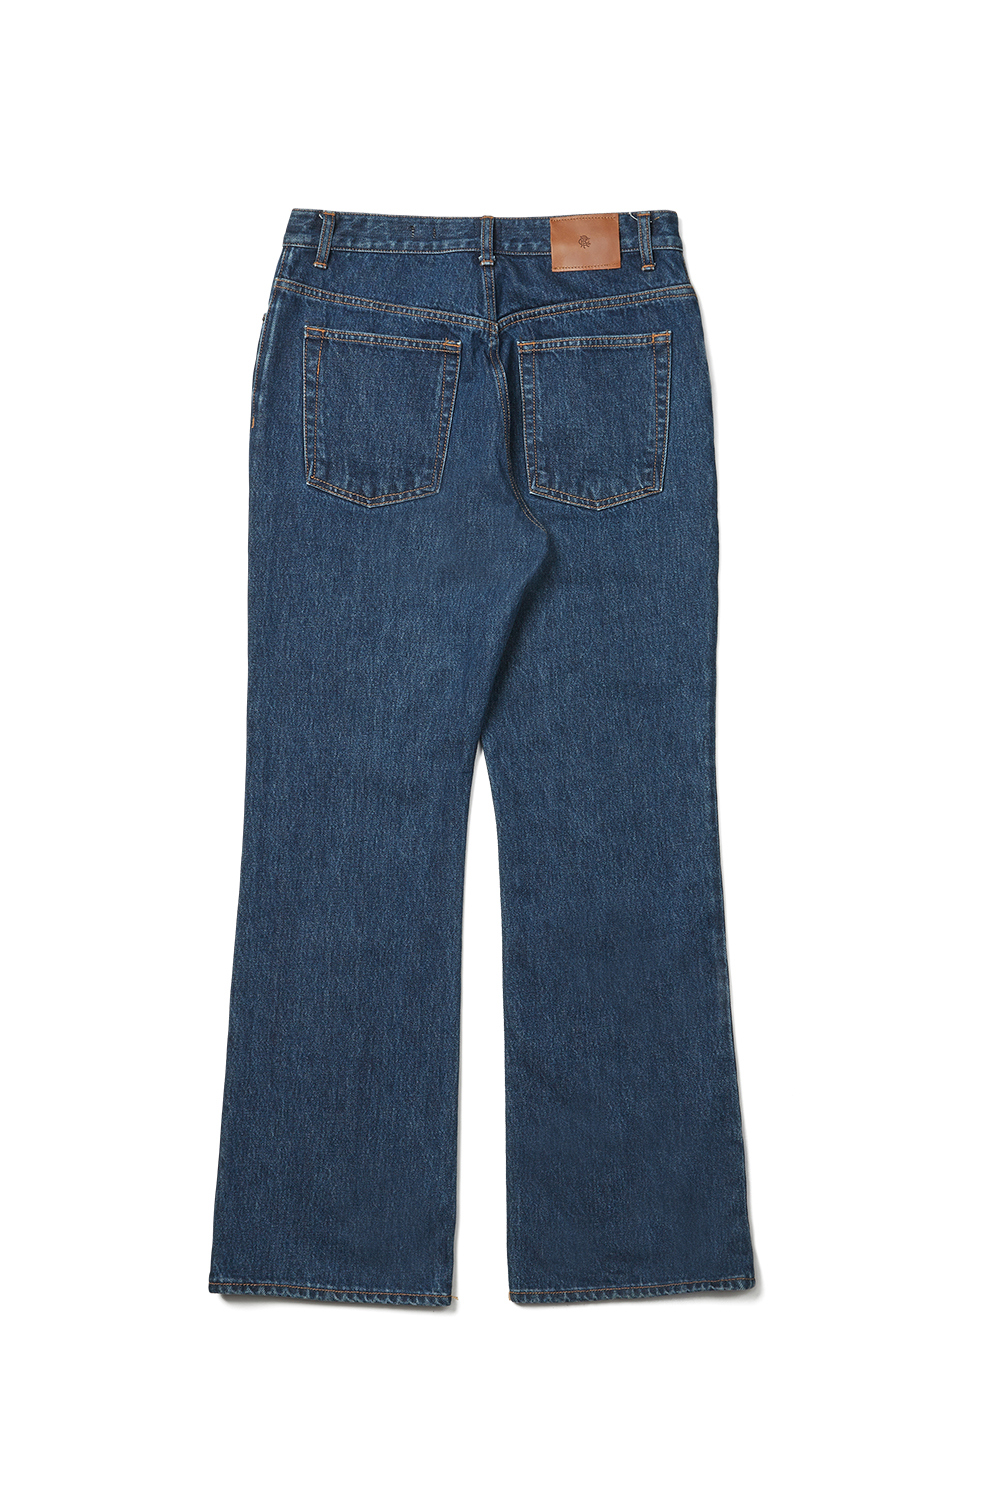 Pants navy blue color image-S1L2